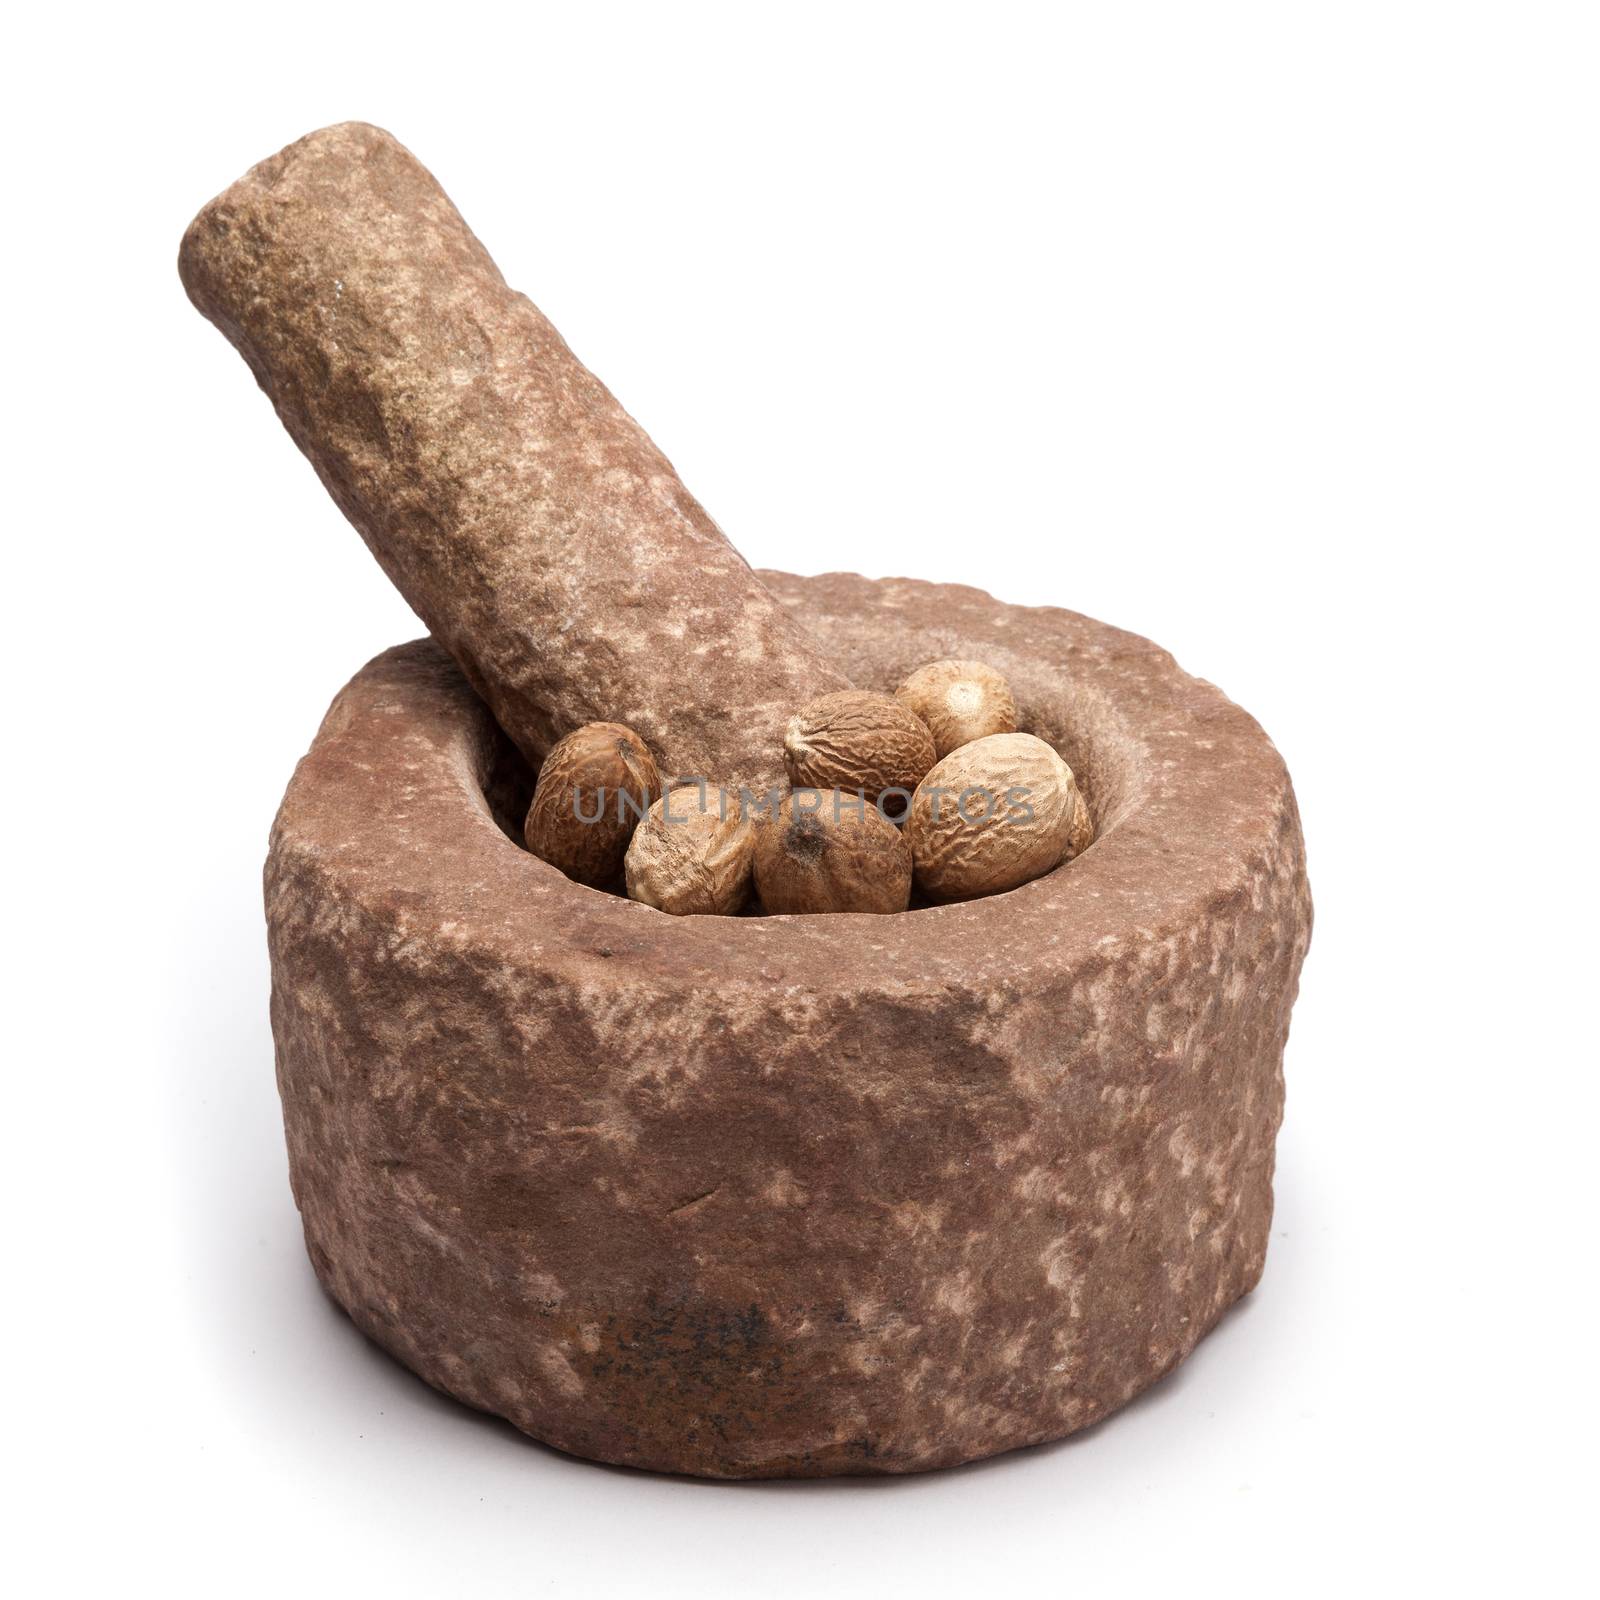 Organic Nutmeg Seed (Myristica fragrans) in mortar. by ziprashantzi